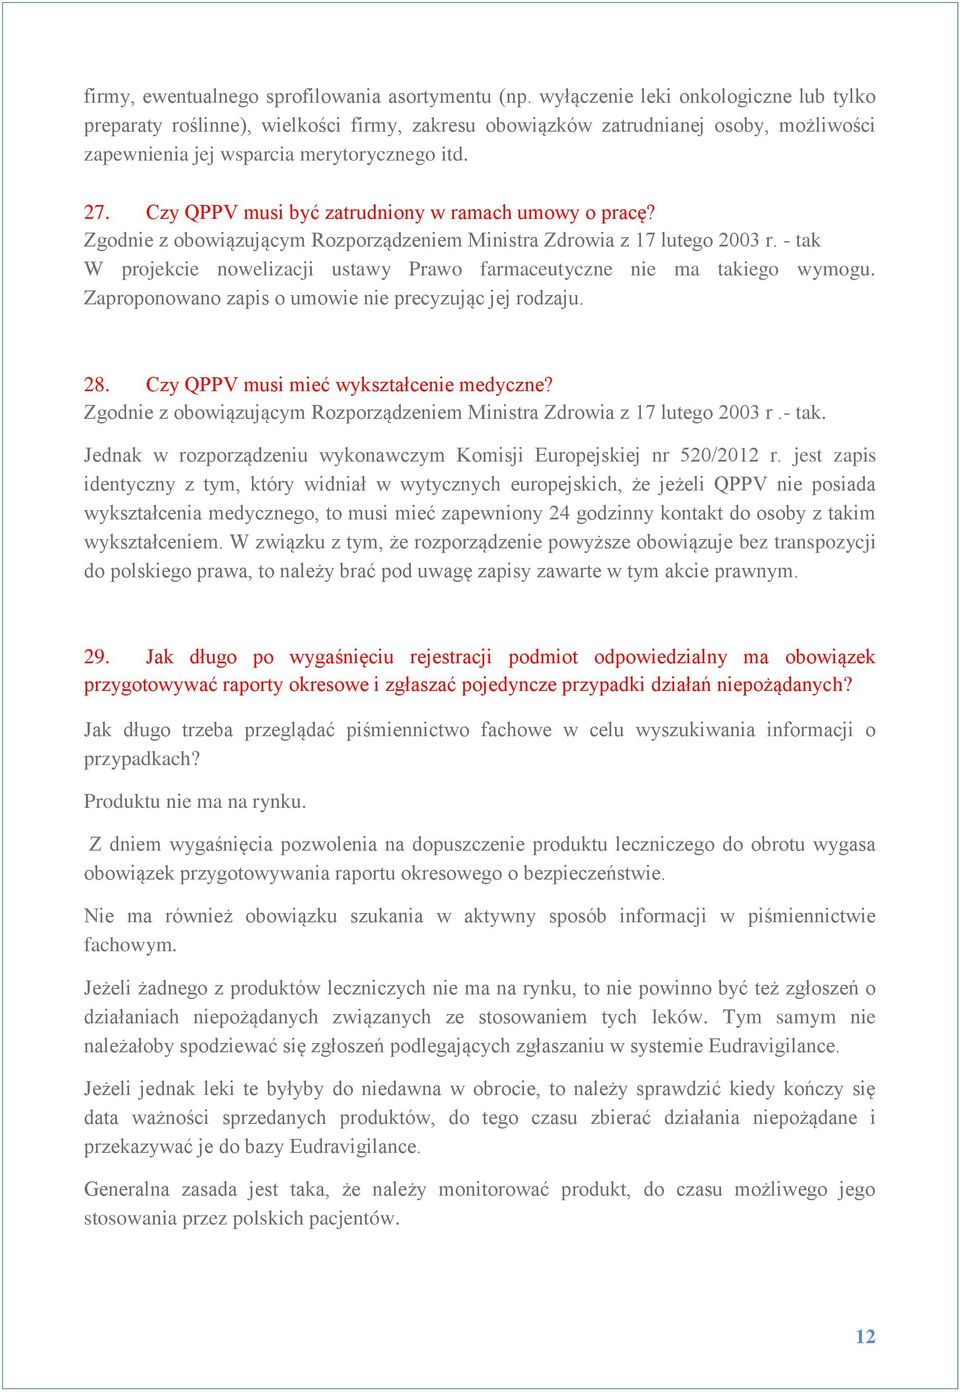 Czy QPPV musi być zatrudniony w ramach umowy o pracę? Zgodnie z obowiązującym Rozporządzeniem Ministra Zdrowia z 17 lutego 2003 r.